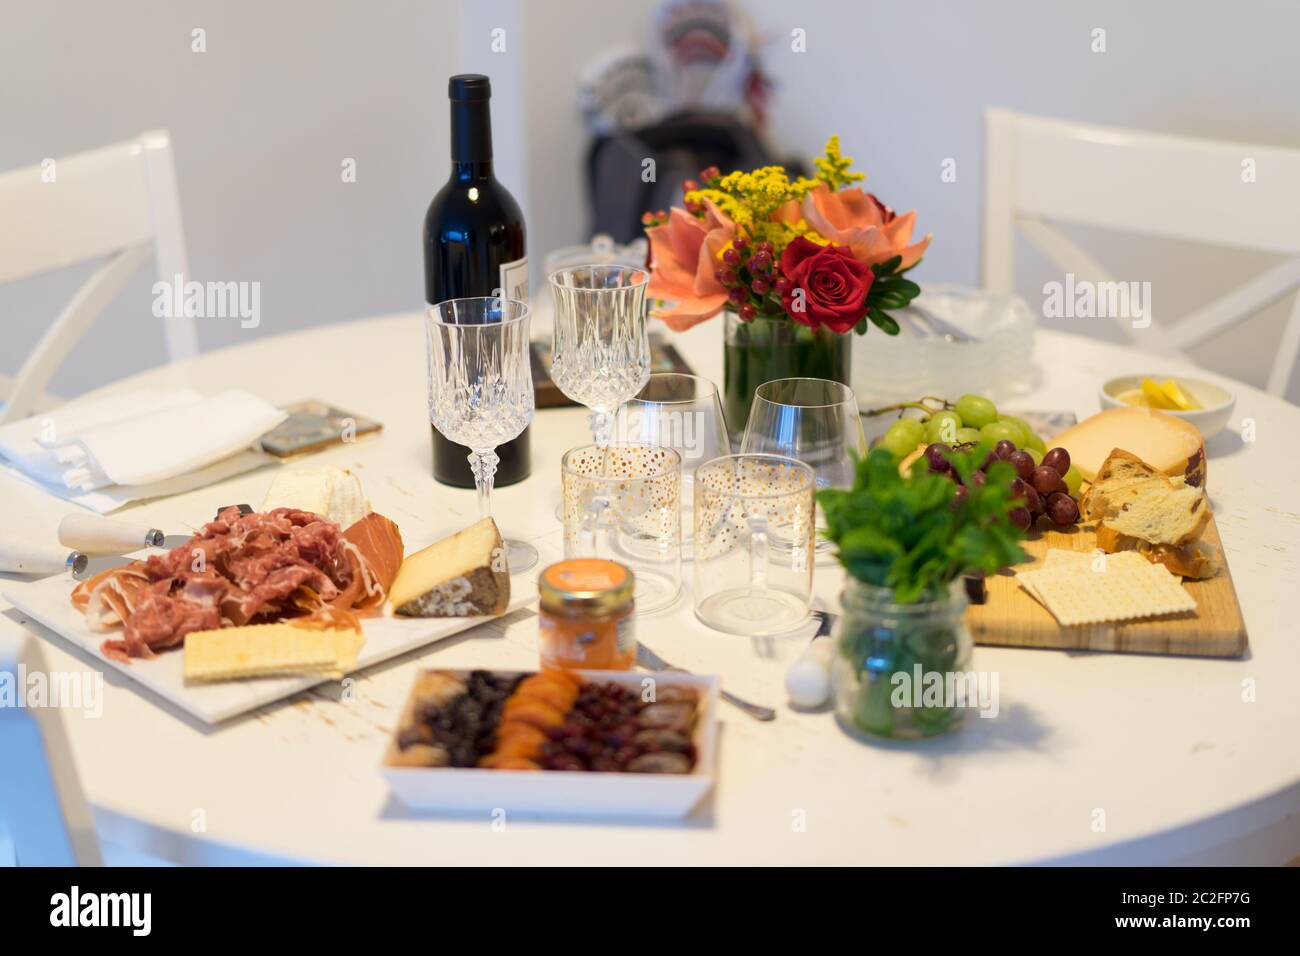 Dekoration auf dem Tisch. Blumenarrangement mit Käse Vorspeise, Obst und Wein. Stockfoto